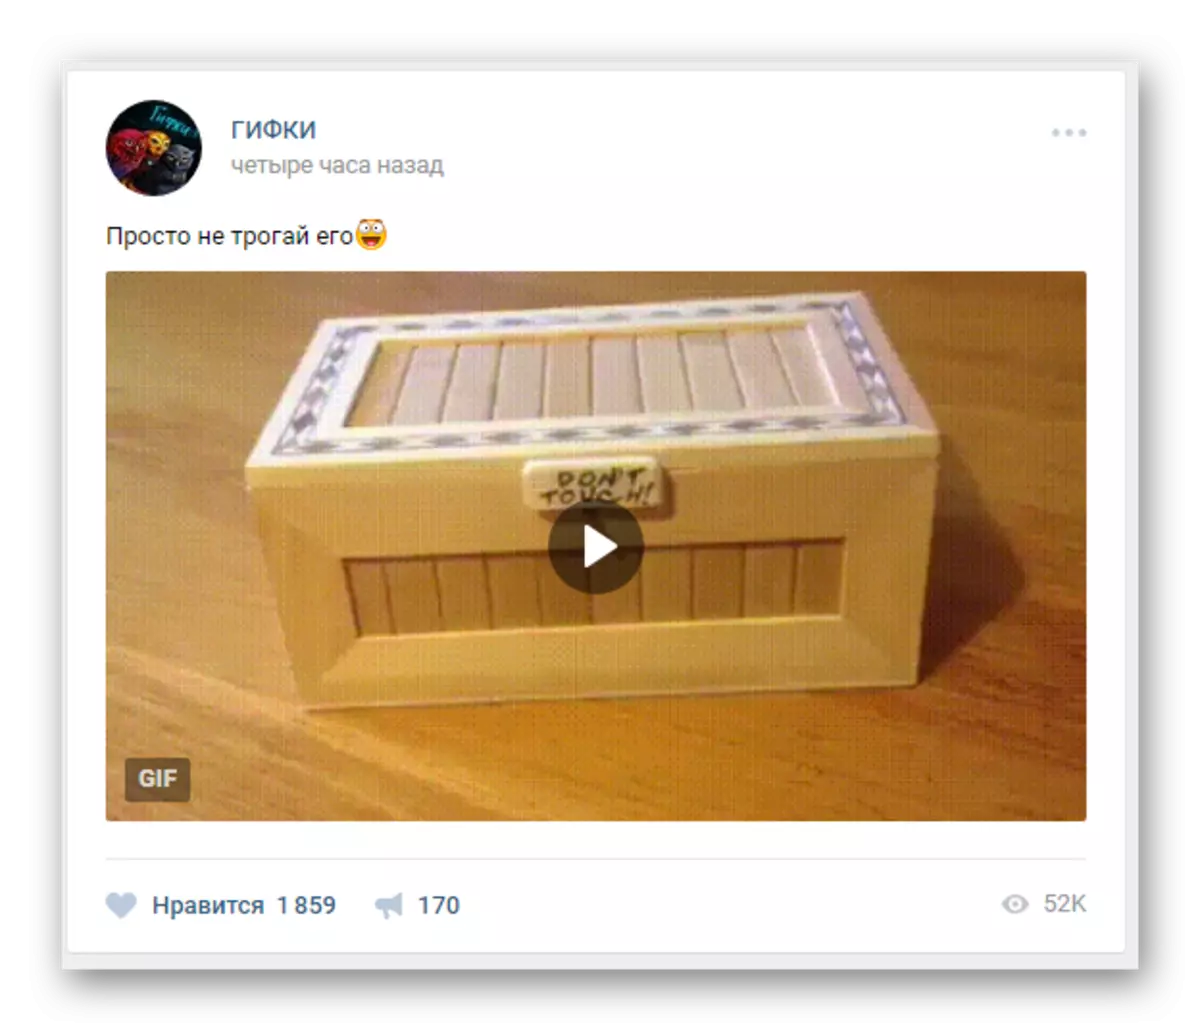 Opnimme mei GIF-ôfbylding oan 'e muorre fan' e mienskip op 'e webside fan Vkontakte